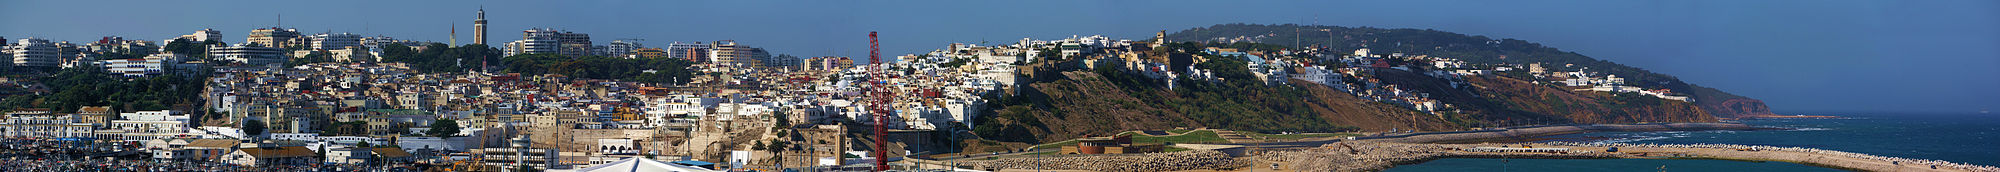 Tanger Panorama.jpg